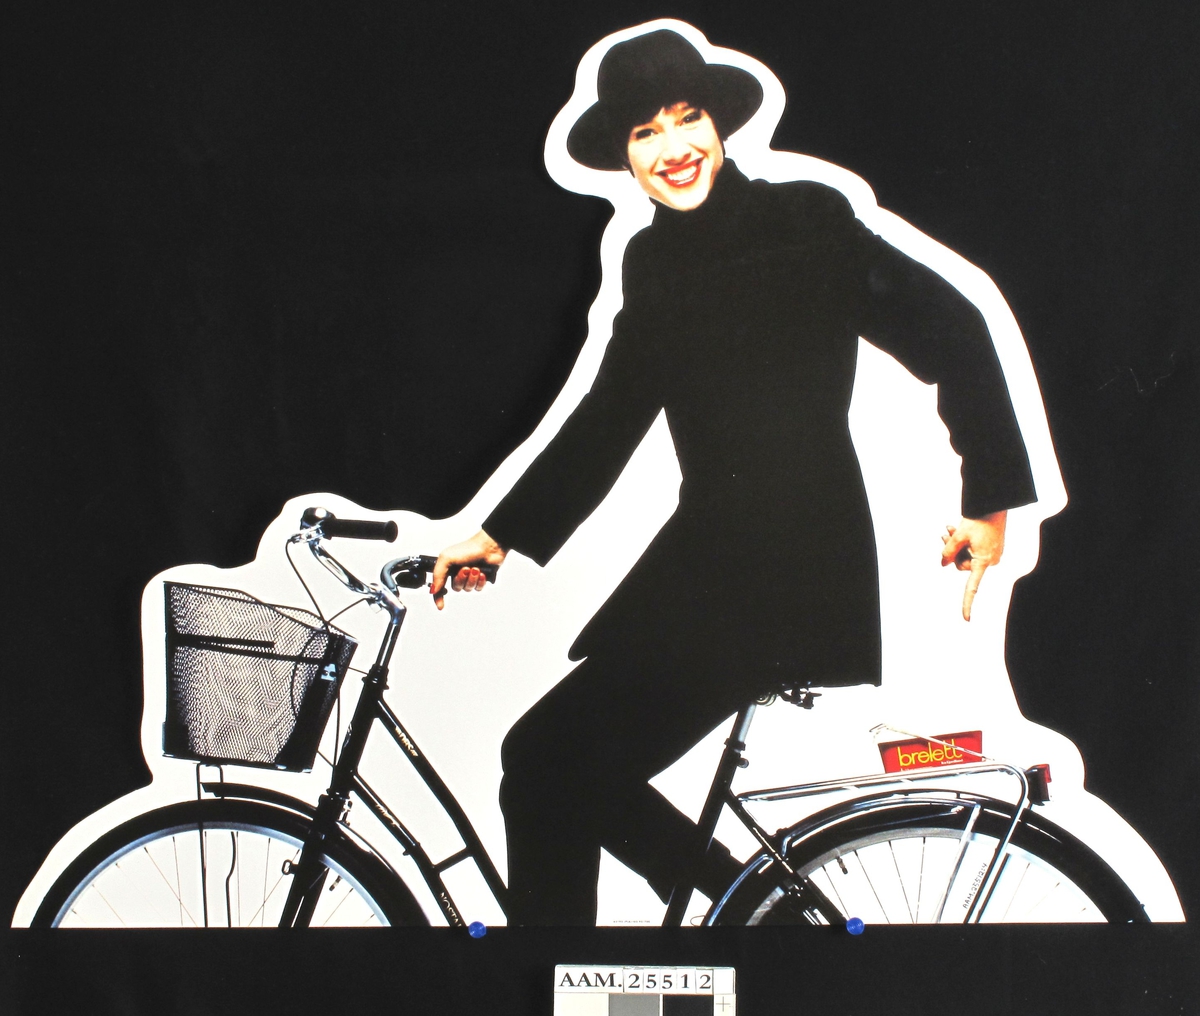 Sortkledd kvinne med hatt på sykkel, med Brelettbeger på bagasjebæreren.